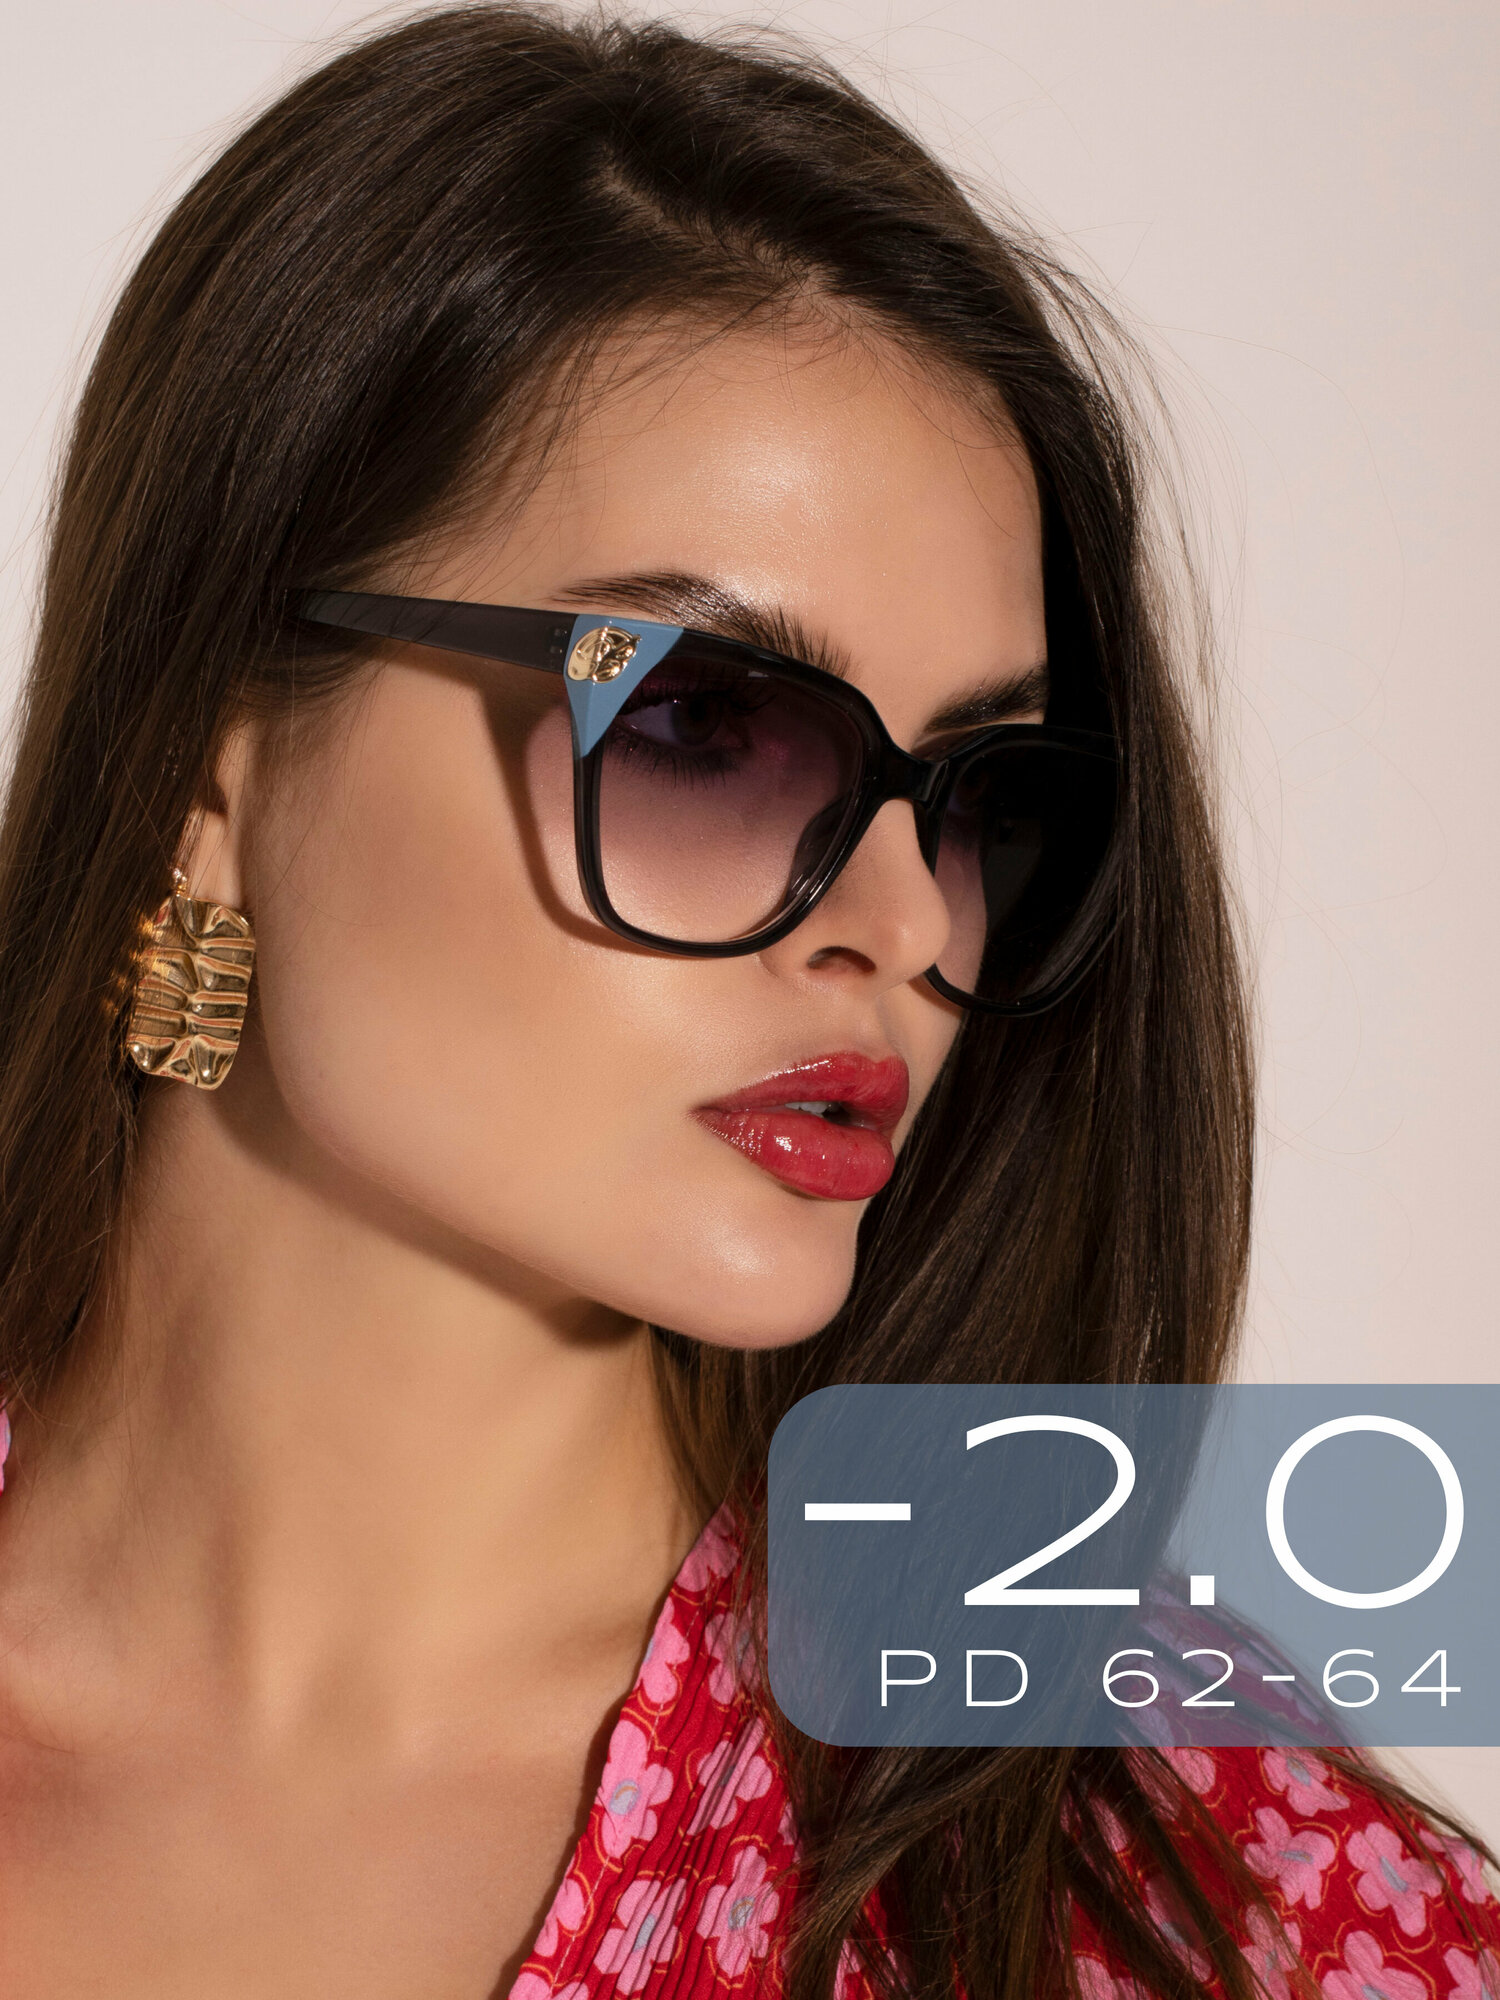 Очки для зрения женские -2 с тонированными линзами Готовые корригирующие очки с диоптрией -2.0